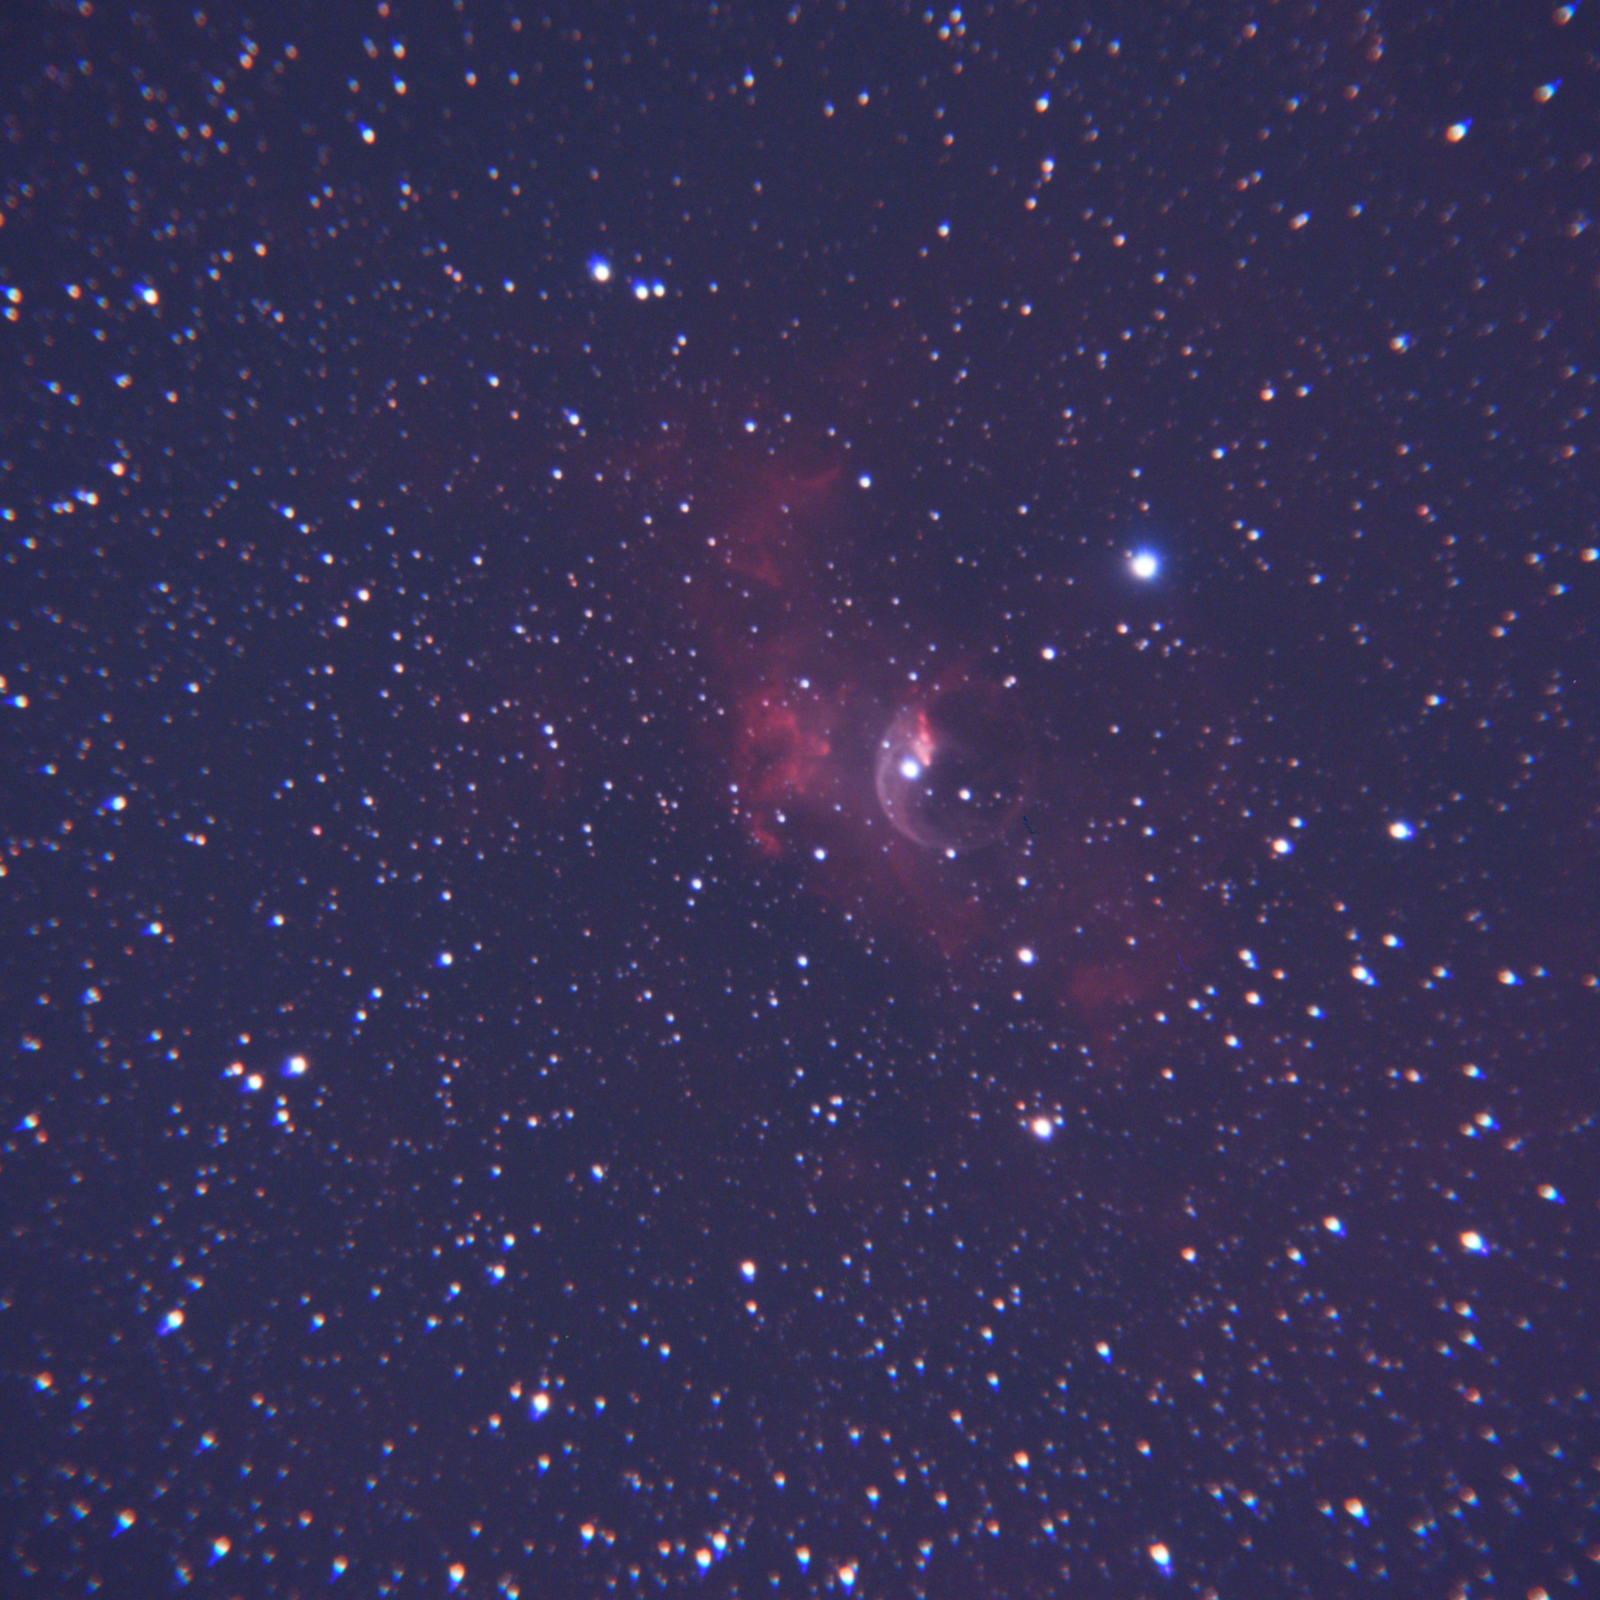 Bubble Nebula